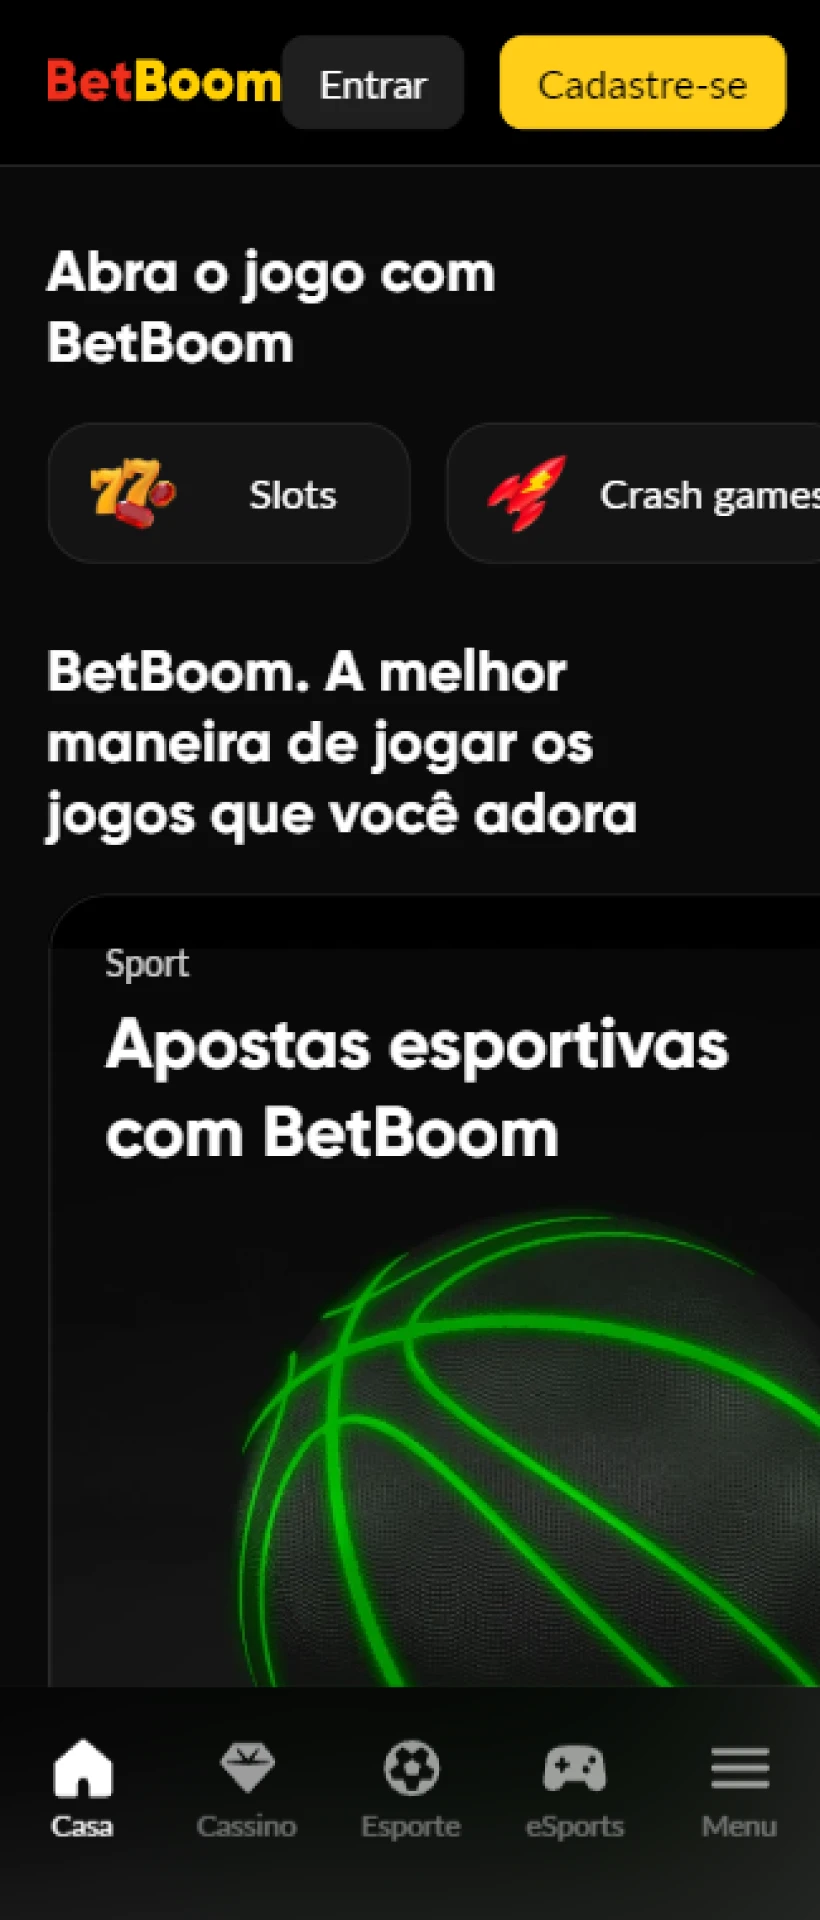 Visão geral da página principal do aplicativo Betboom.